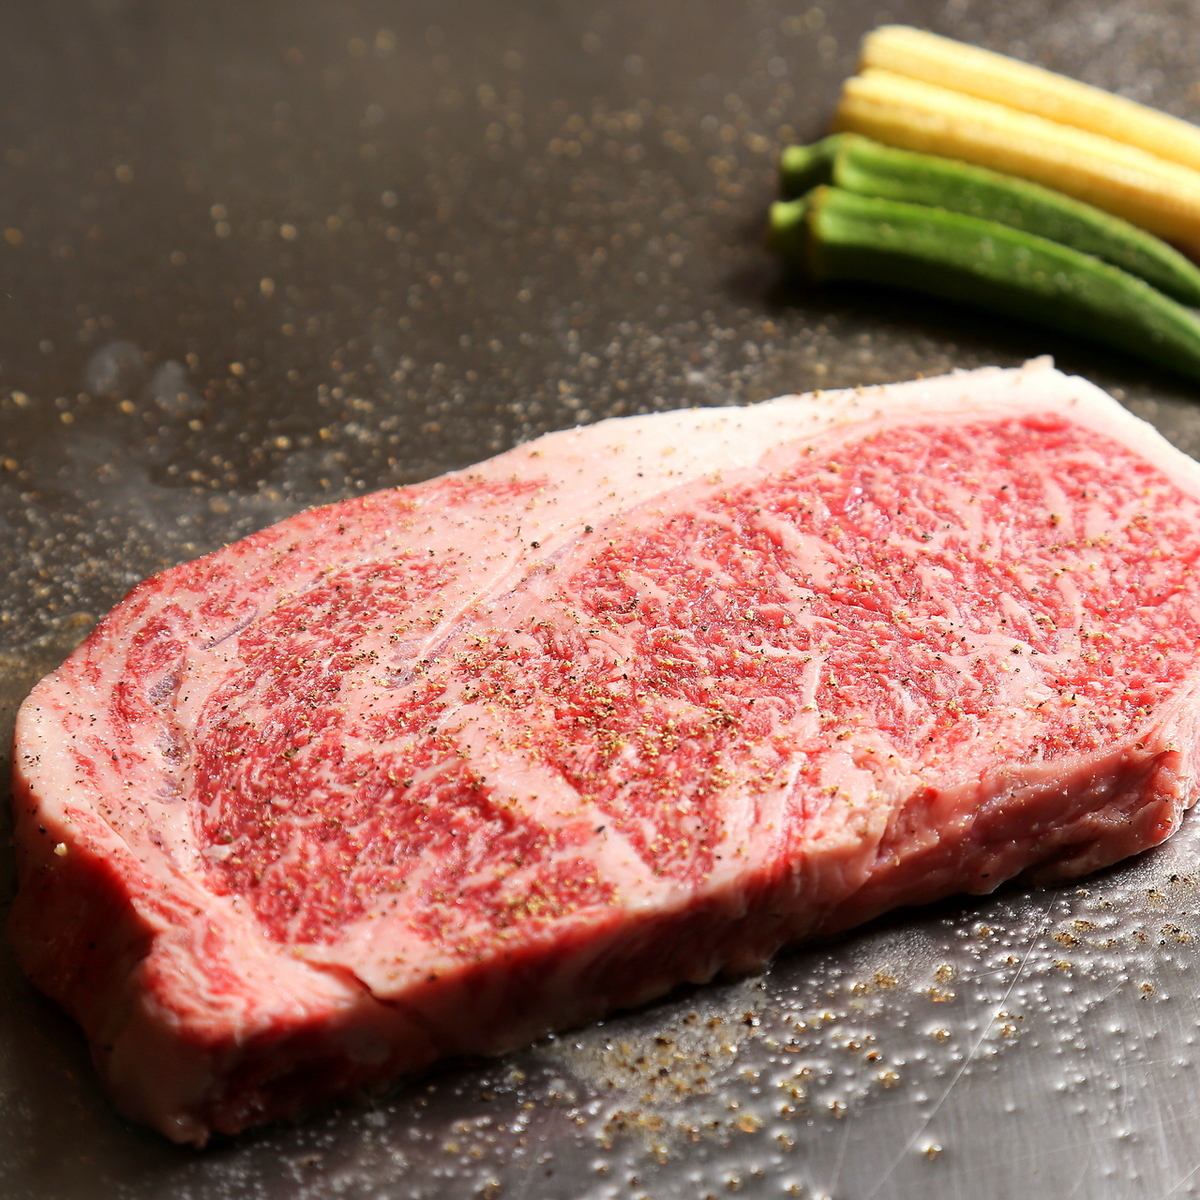 Ahige 的所有肉都是嚴格挑選的廣島 A4 和牛。